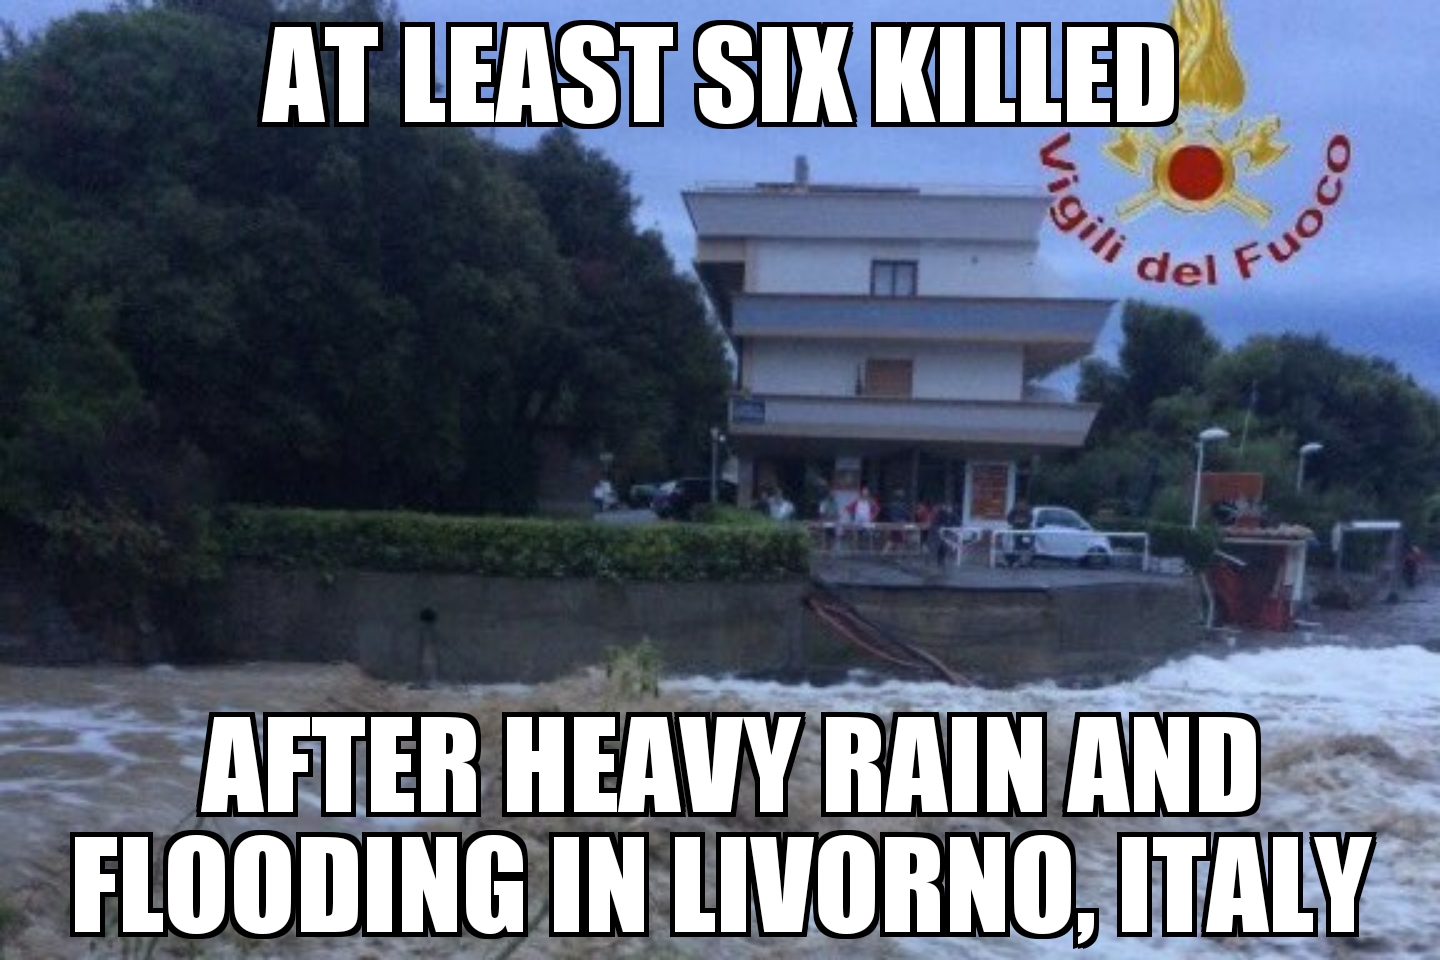 Floods kill six in Livorno, Italy